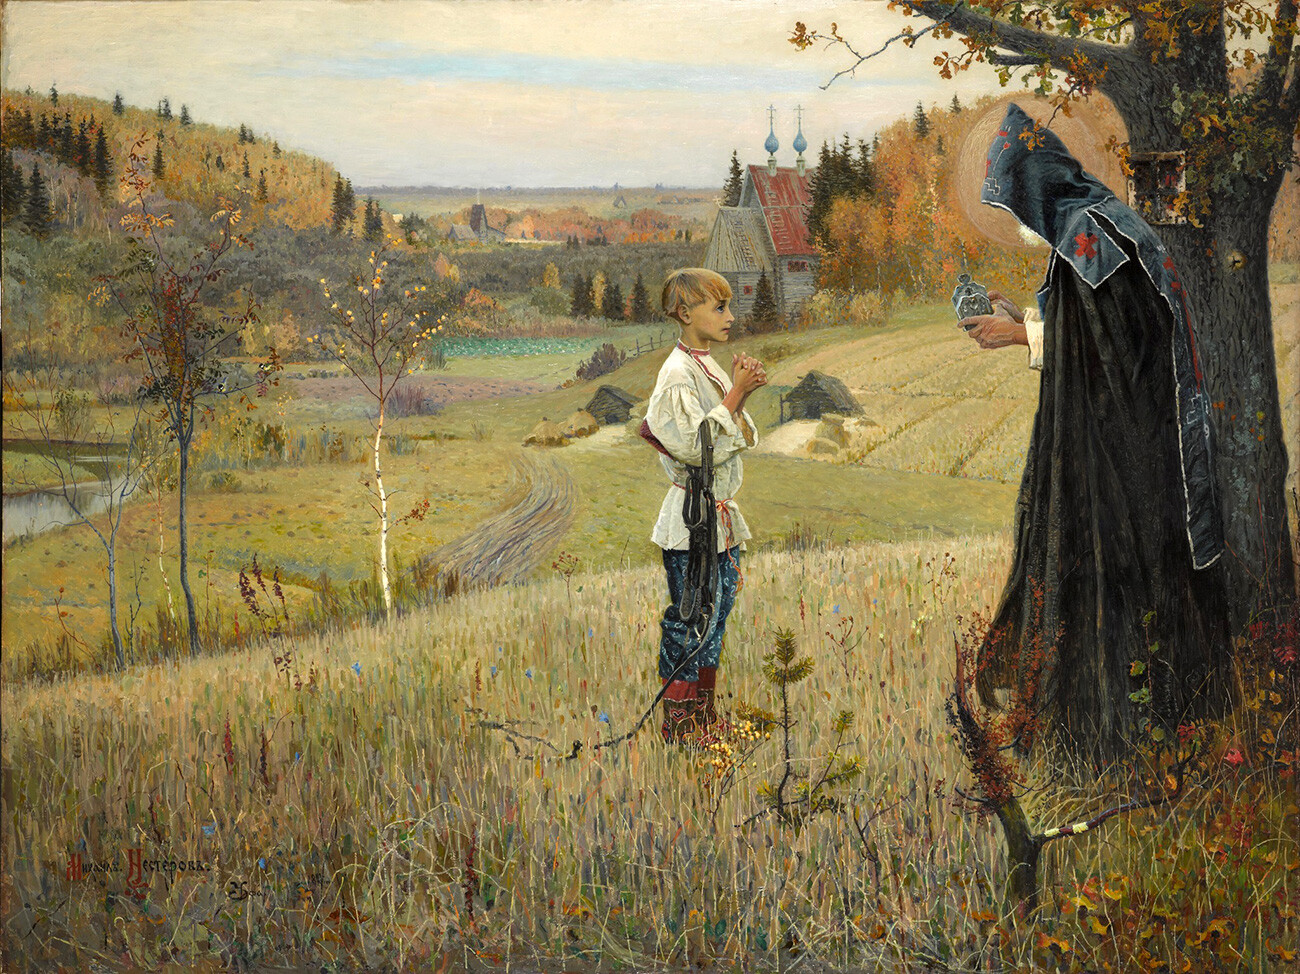 “La visione del giovane Bartolomeo”, 1890
